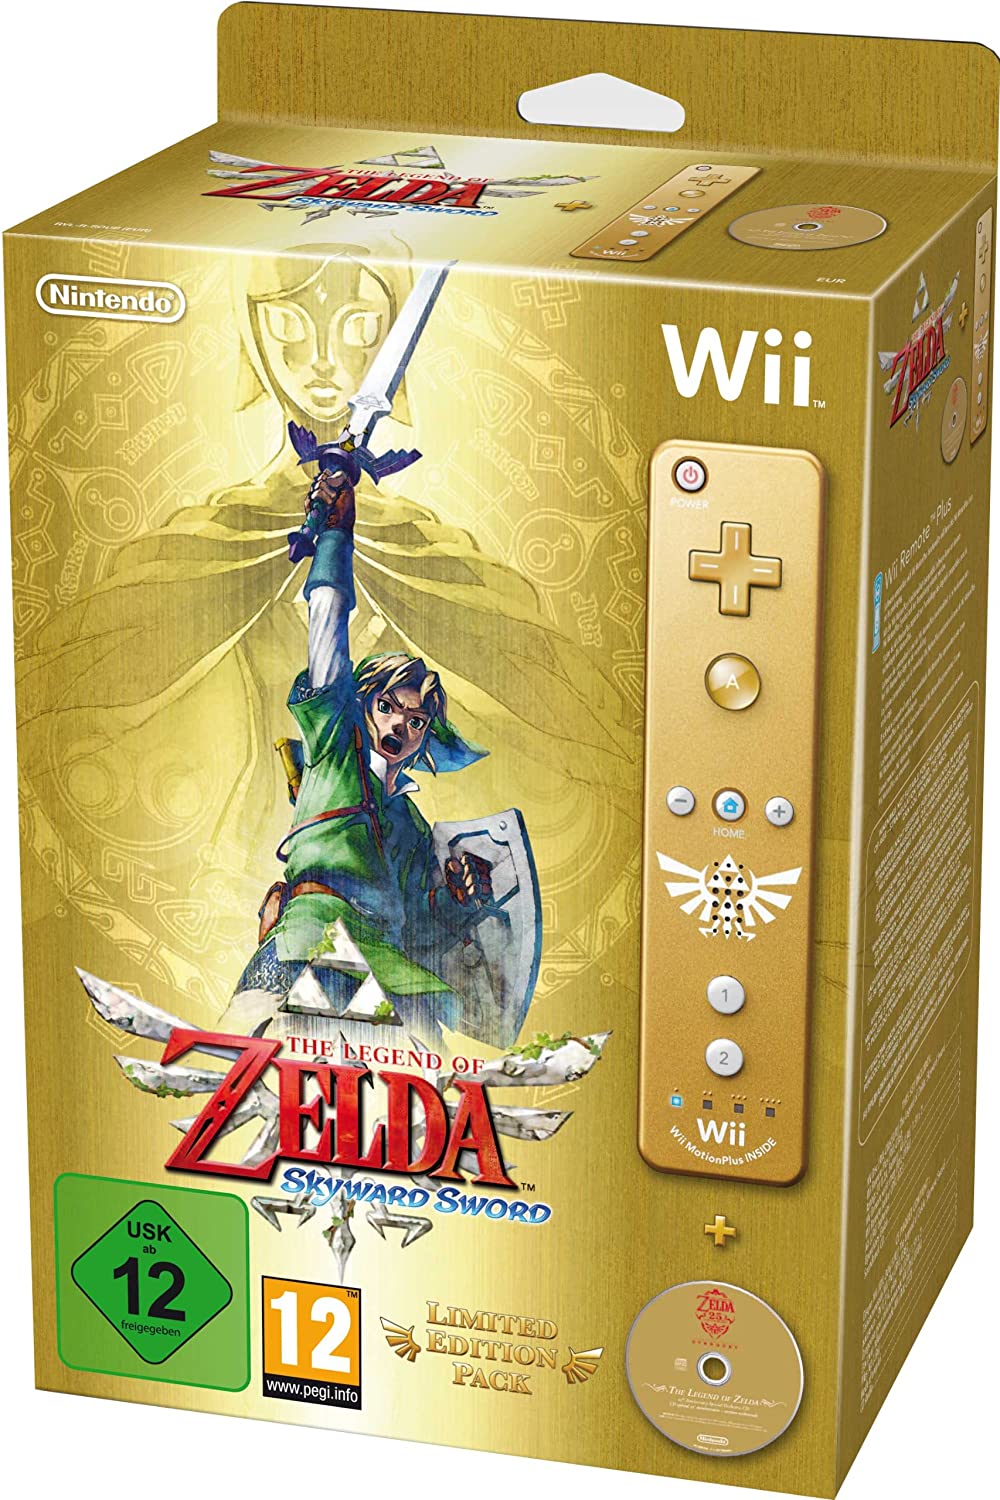 The Legend of Zelda Skyward Sword Limited Edition Pack (újszerű)